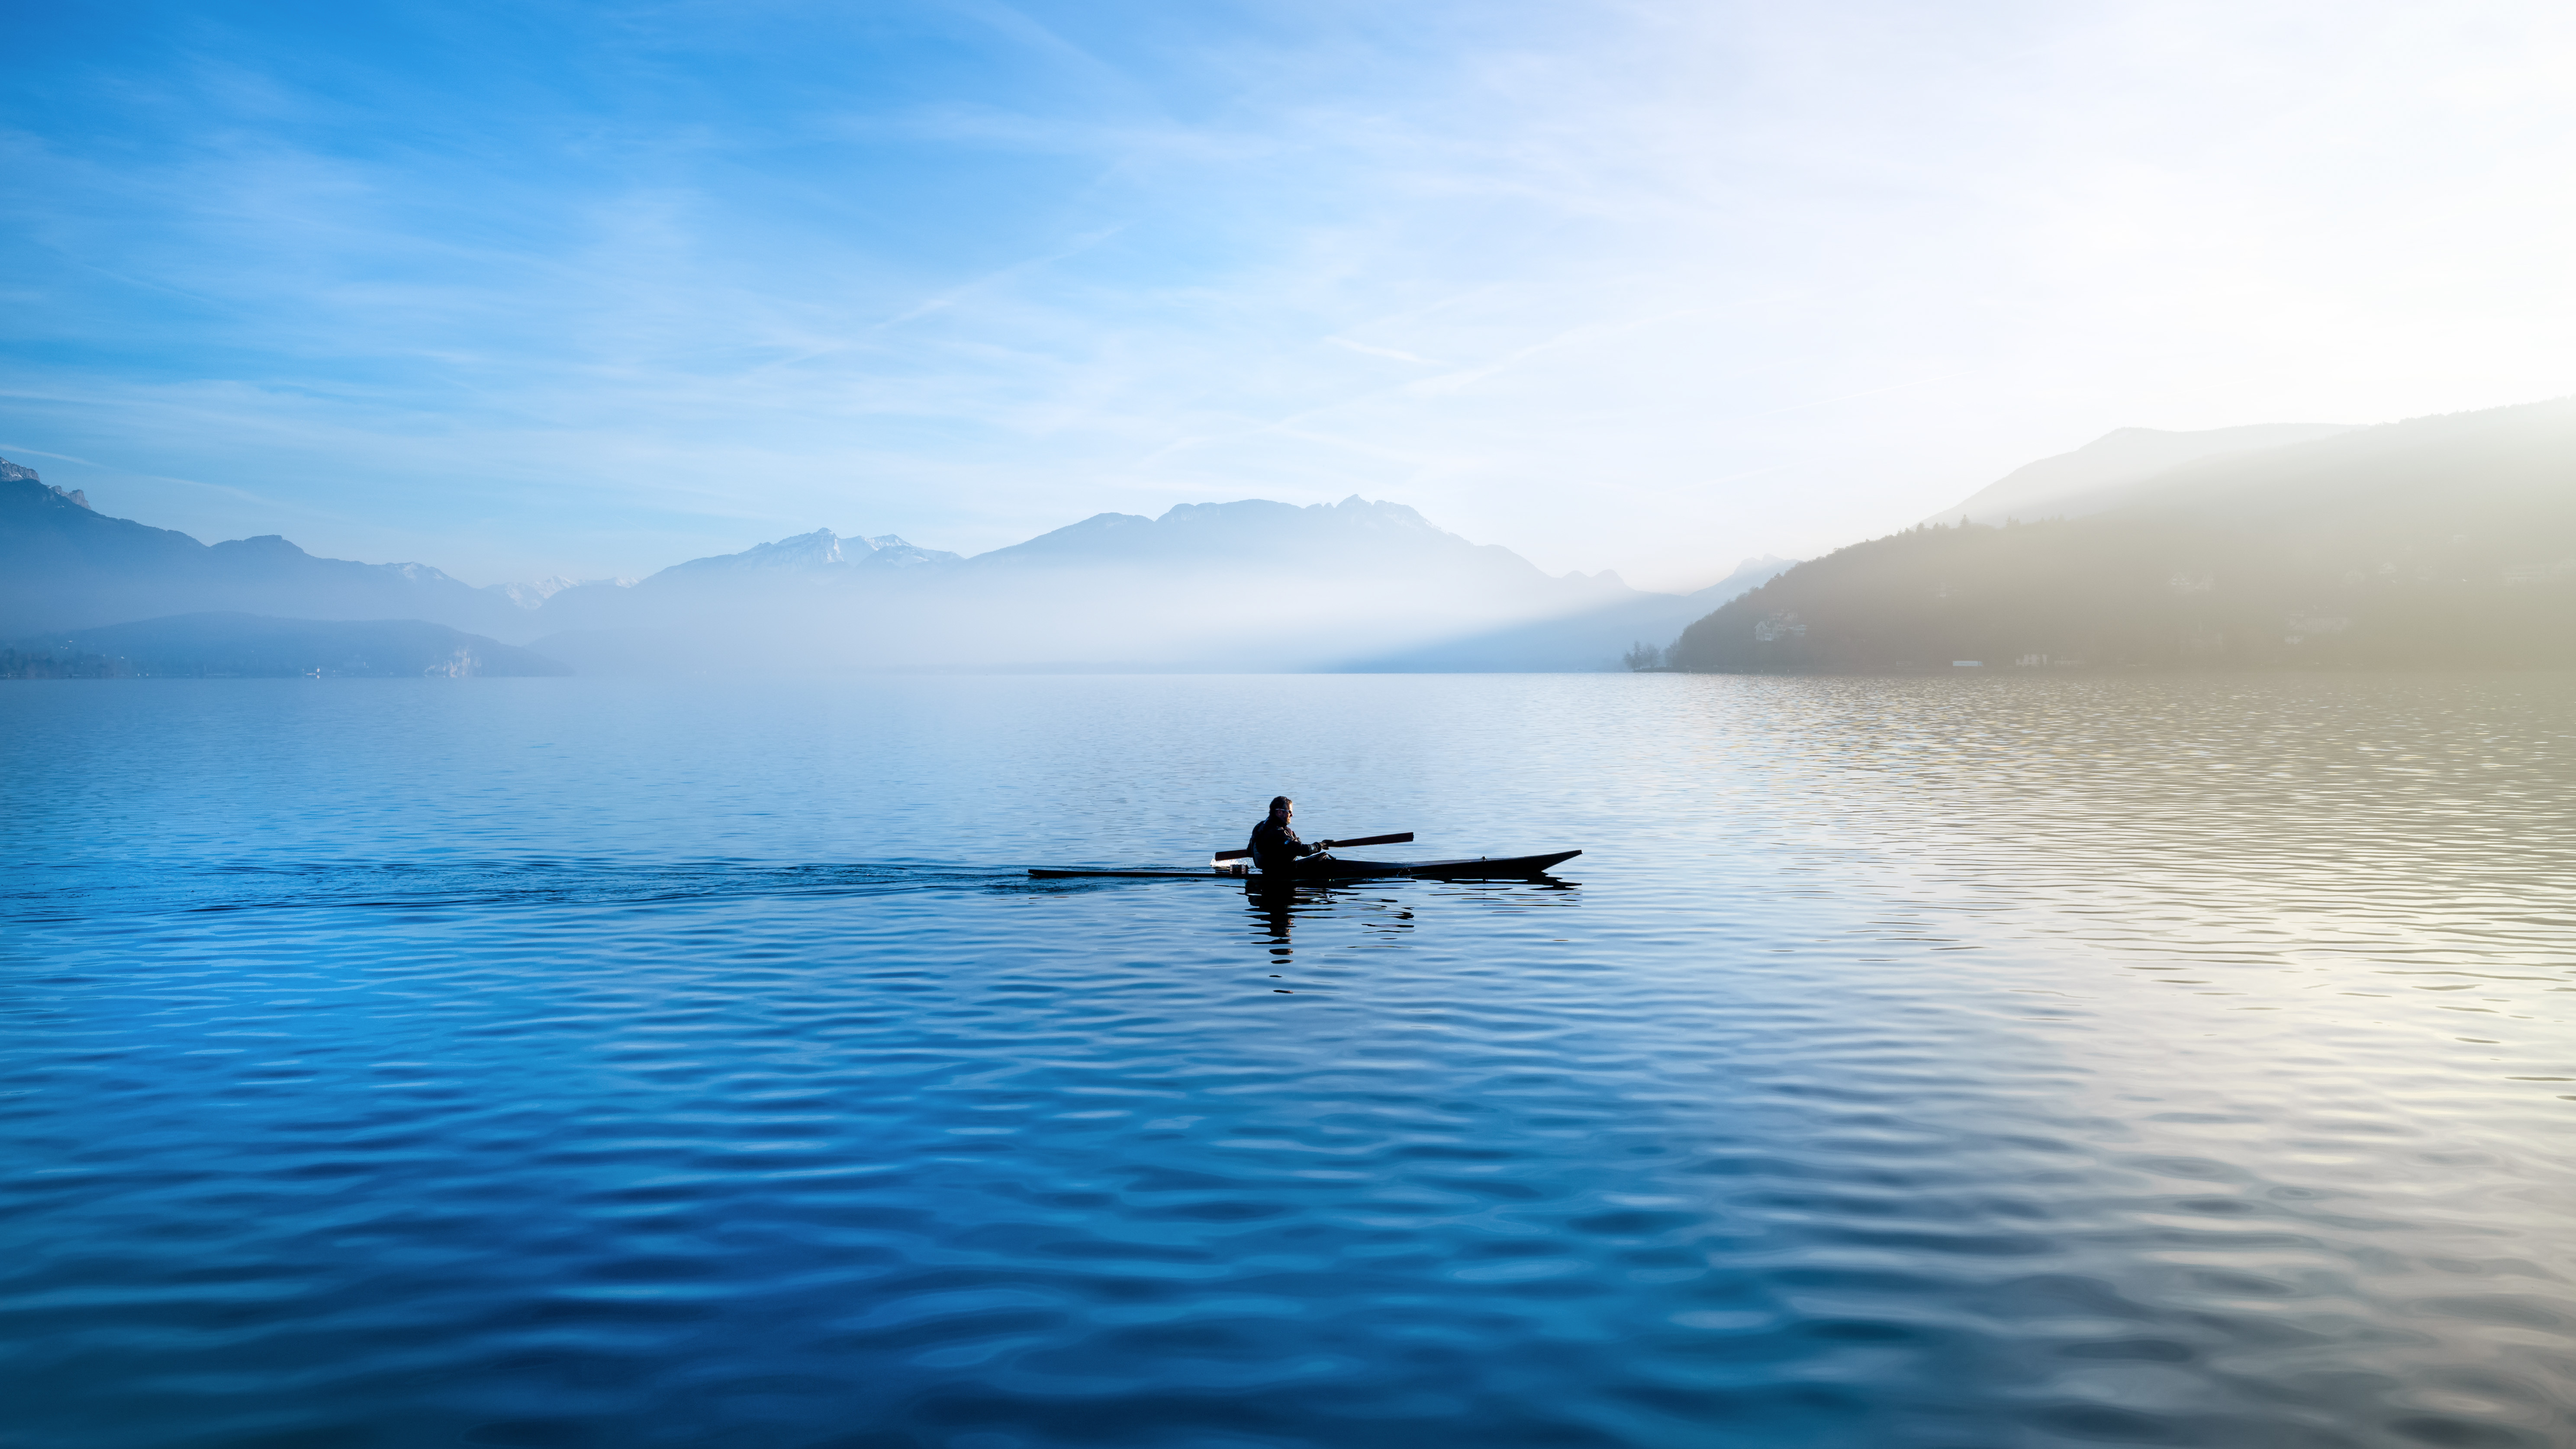 Путешественник переплыл спокойное озеро на яхте. Озеро Рица каякинг. Севан каякинг. Озеро Байкал. Лодка в море.